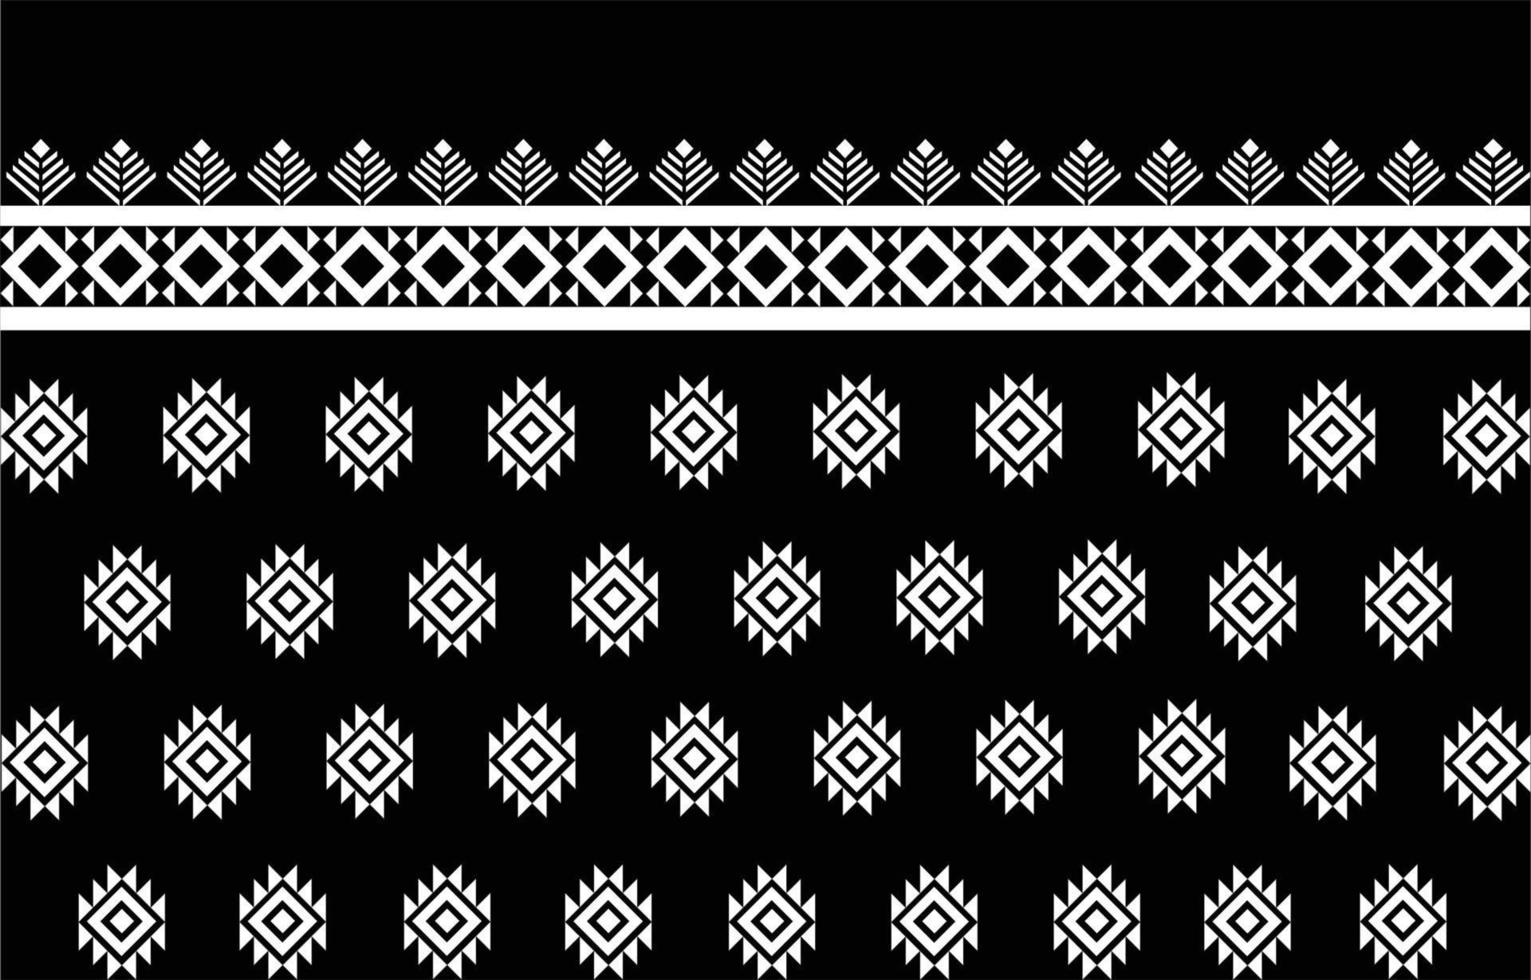 design de padrão de tecido americano. use a geometria para criar um padrão de tecido. design para indústria têxtil, fundo, carpete, papel de parede, roupas, batik e tecido étnico. colorido. vetor